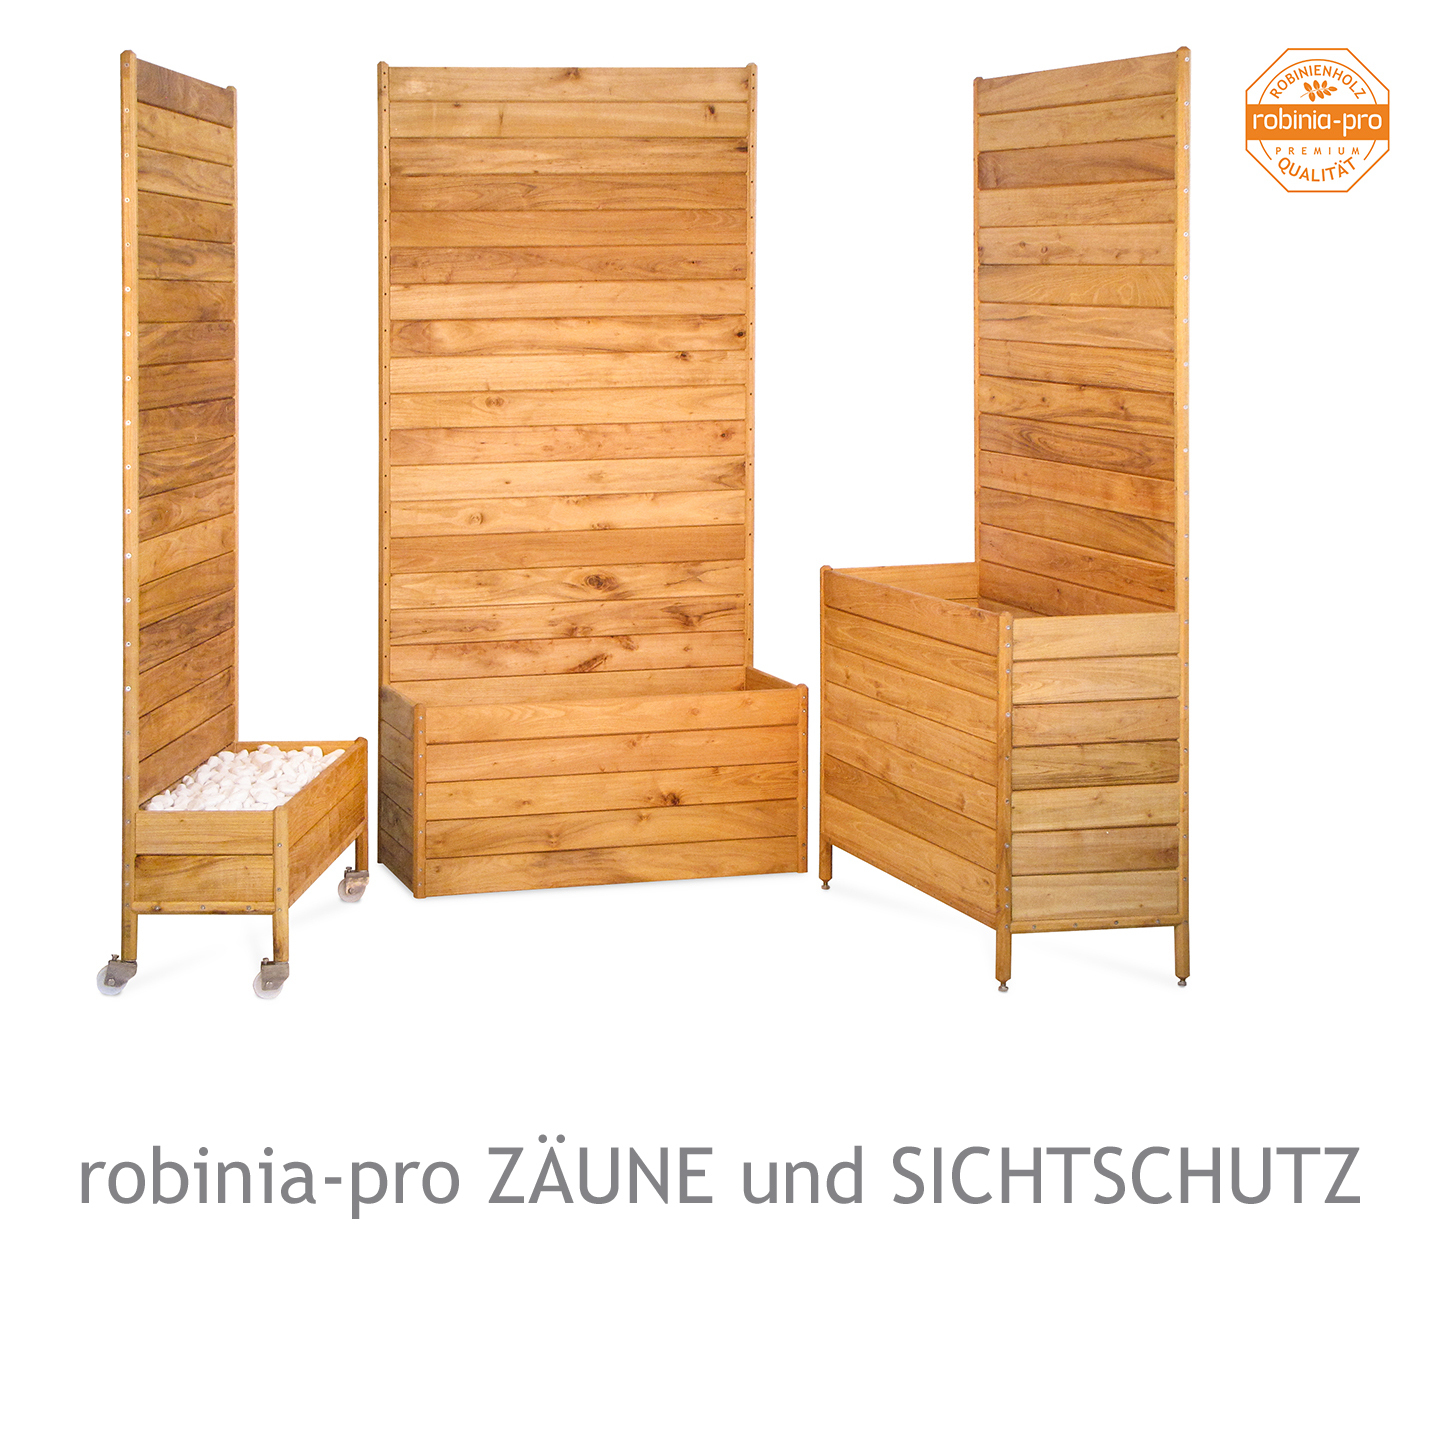 robinia-pro ZÄUNE und SICHTSCHUTZ